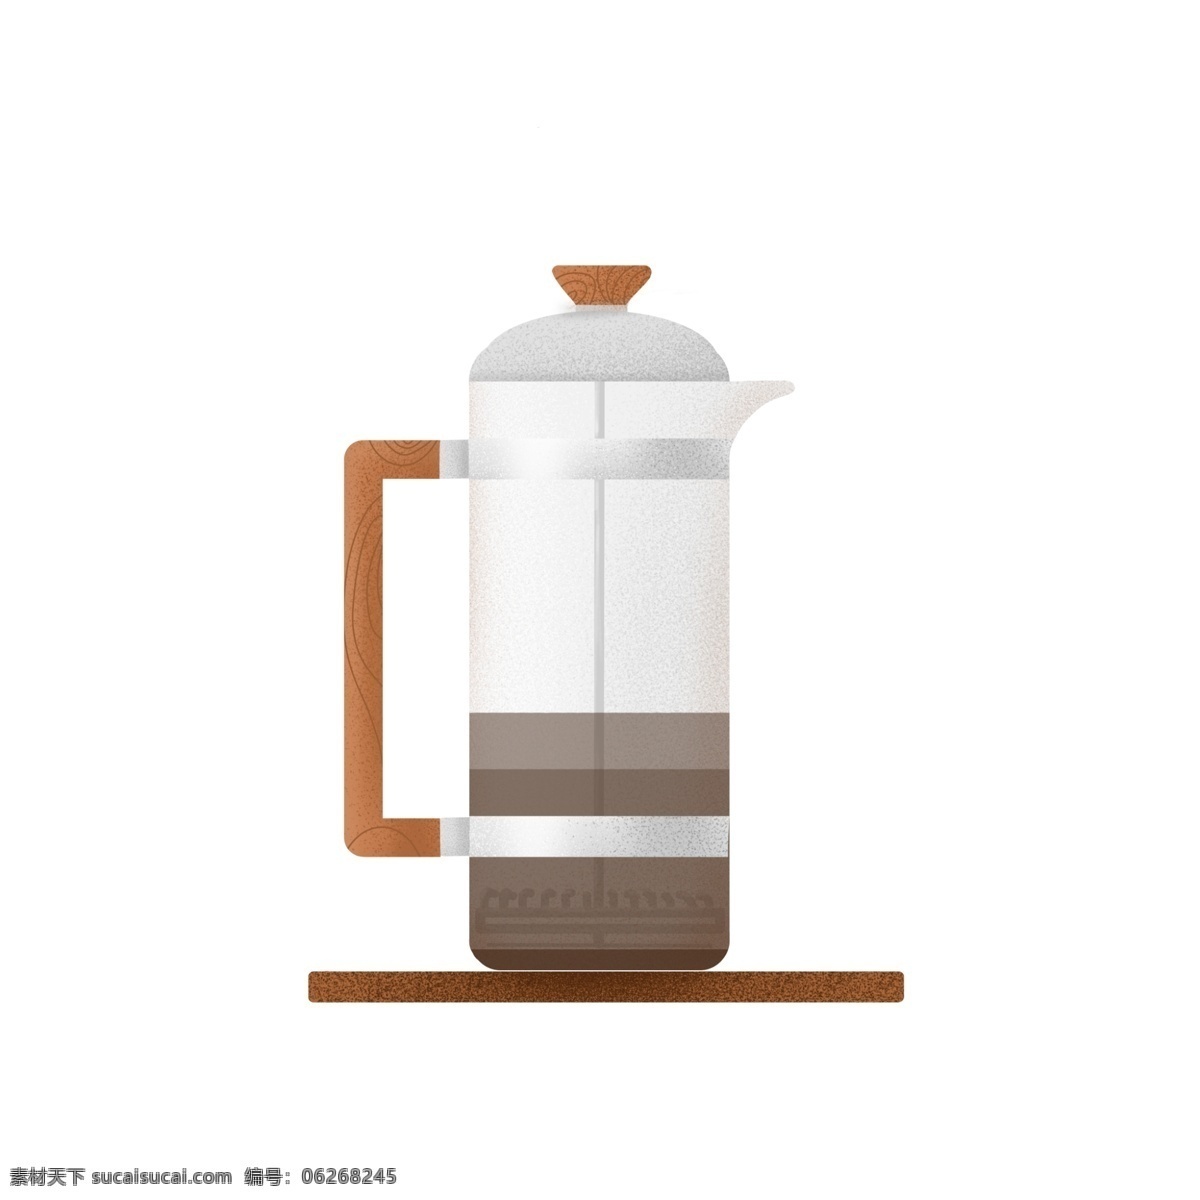 玻璃法压壶 家用咖啡用具 装饰图案 玻璃 不锈钢 透明 咖啡壶 咖啡 咖啡时间 下午茶 玻璃滤压壶 咖啡滤压壶 周末